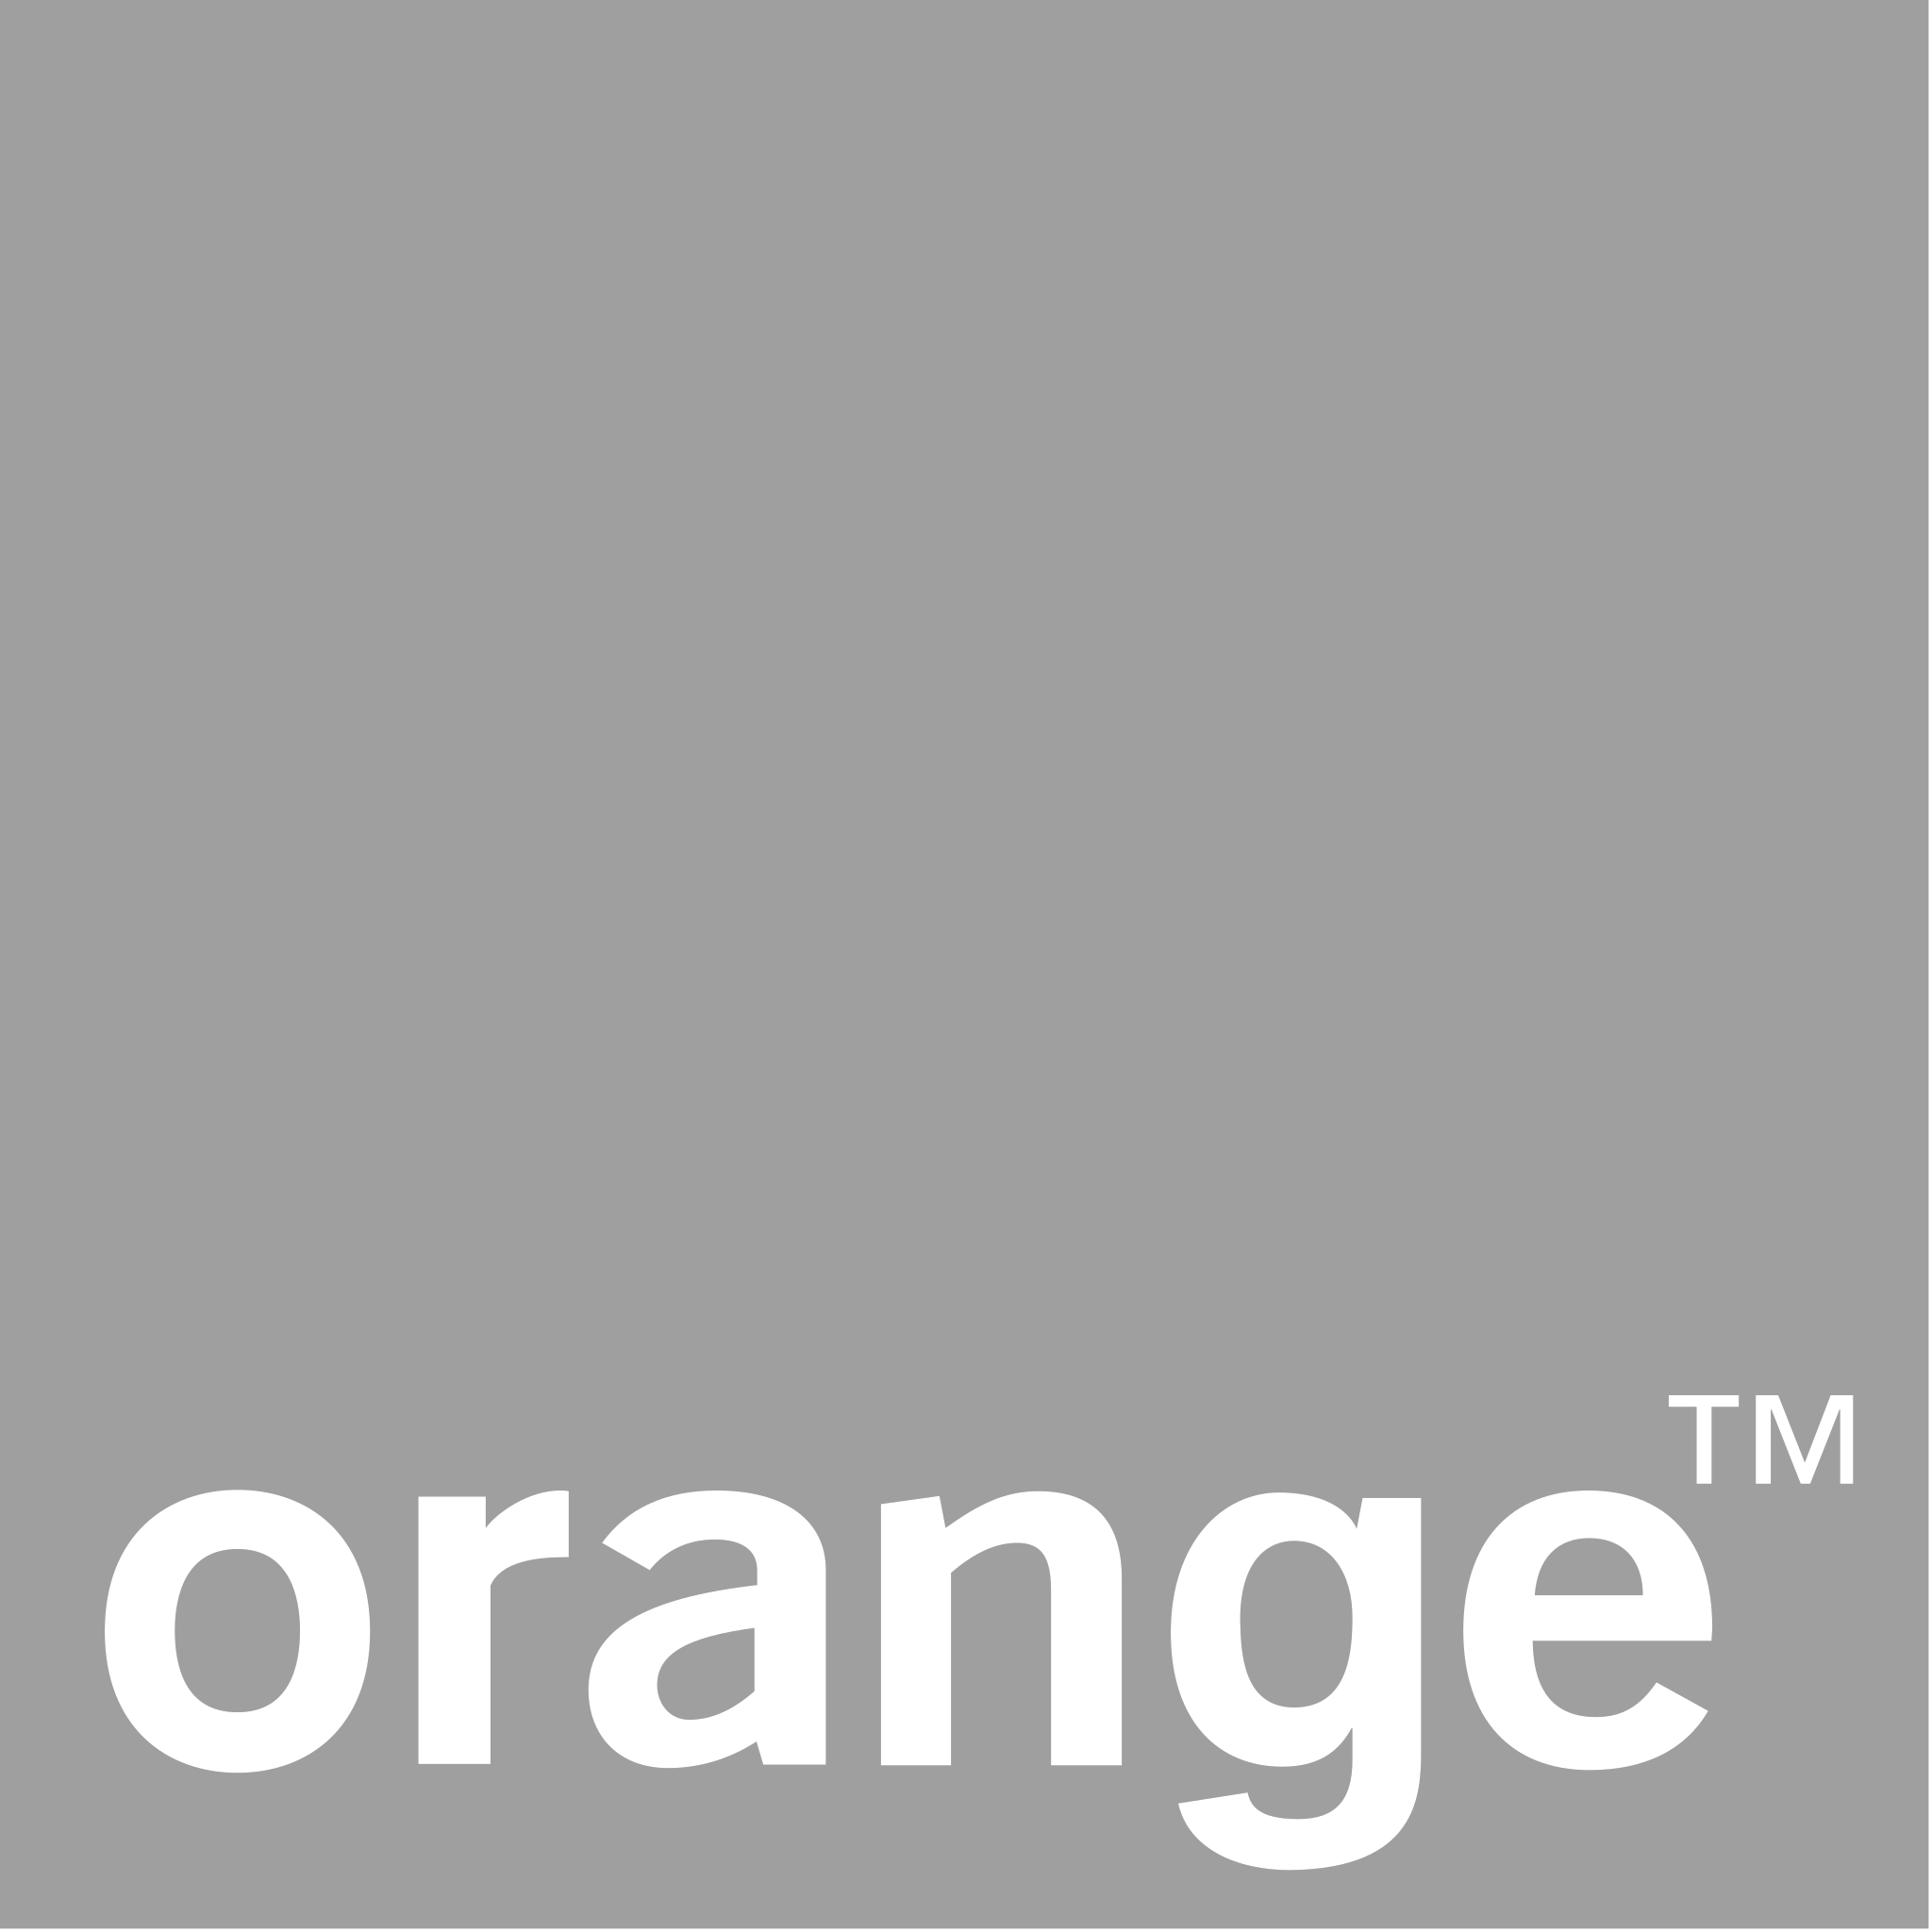 Orange logo copie